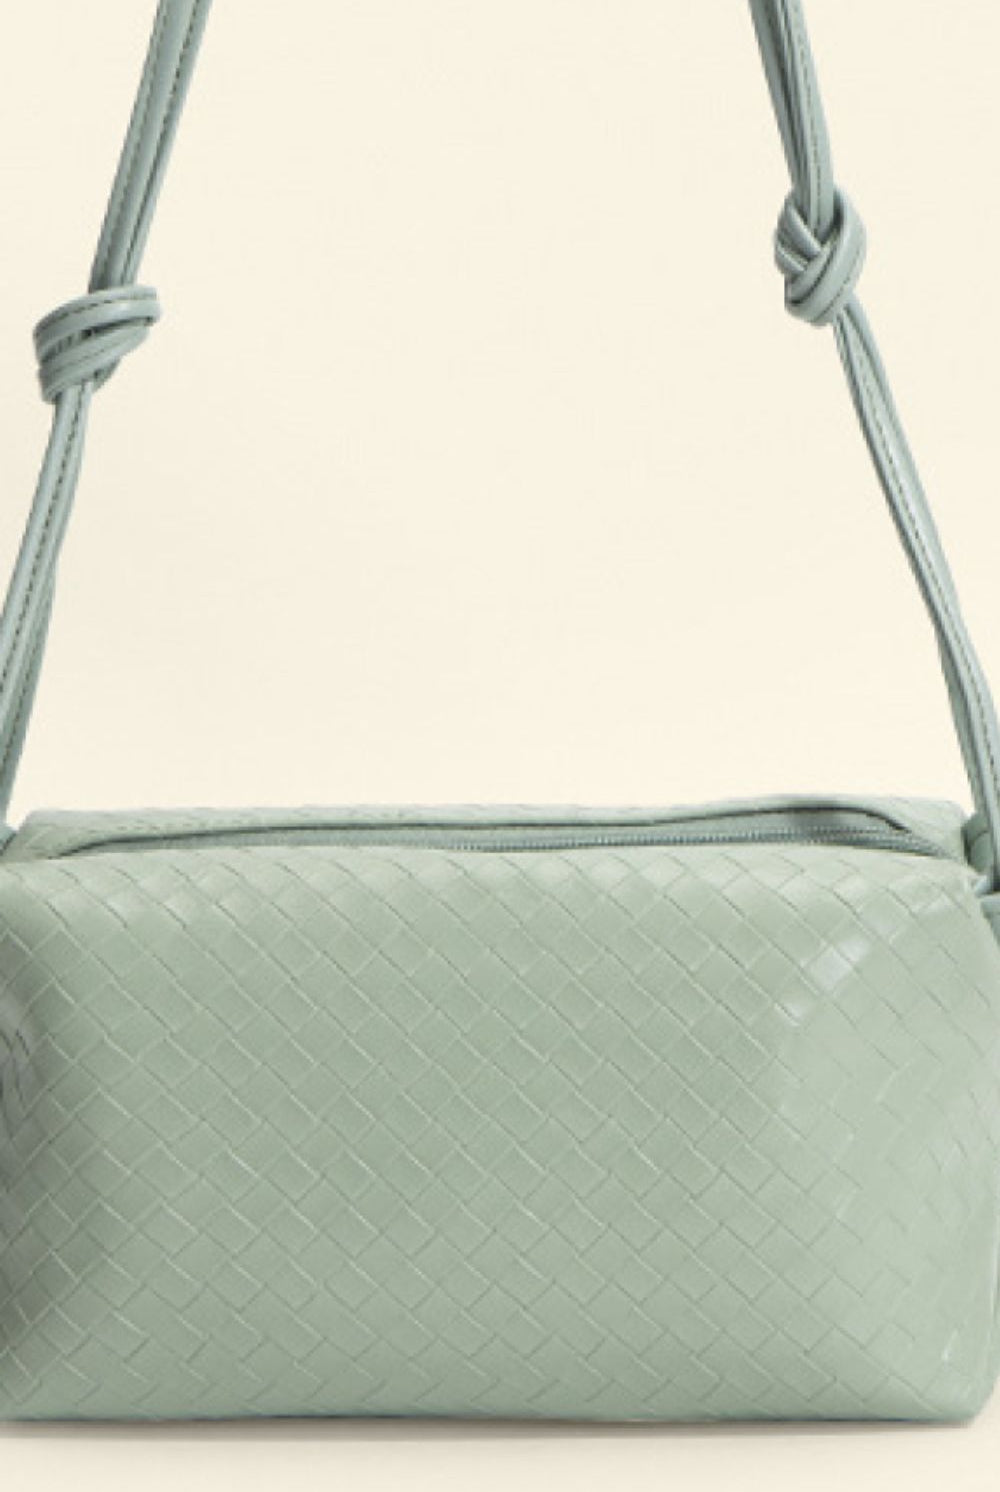 Beige PU Leather Knot Detail Shoulder Bag Handbags